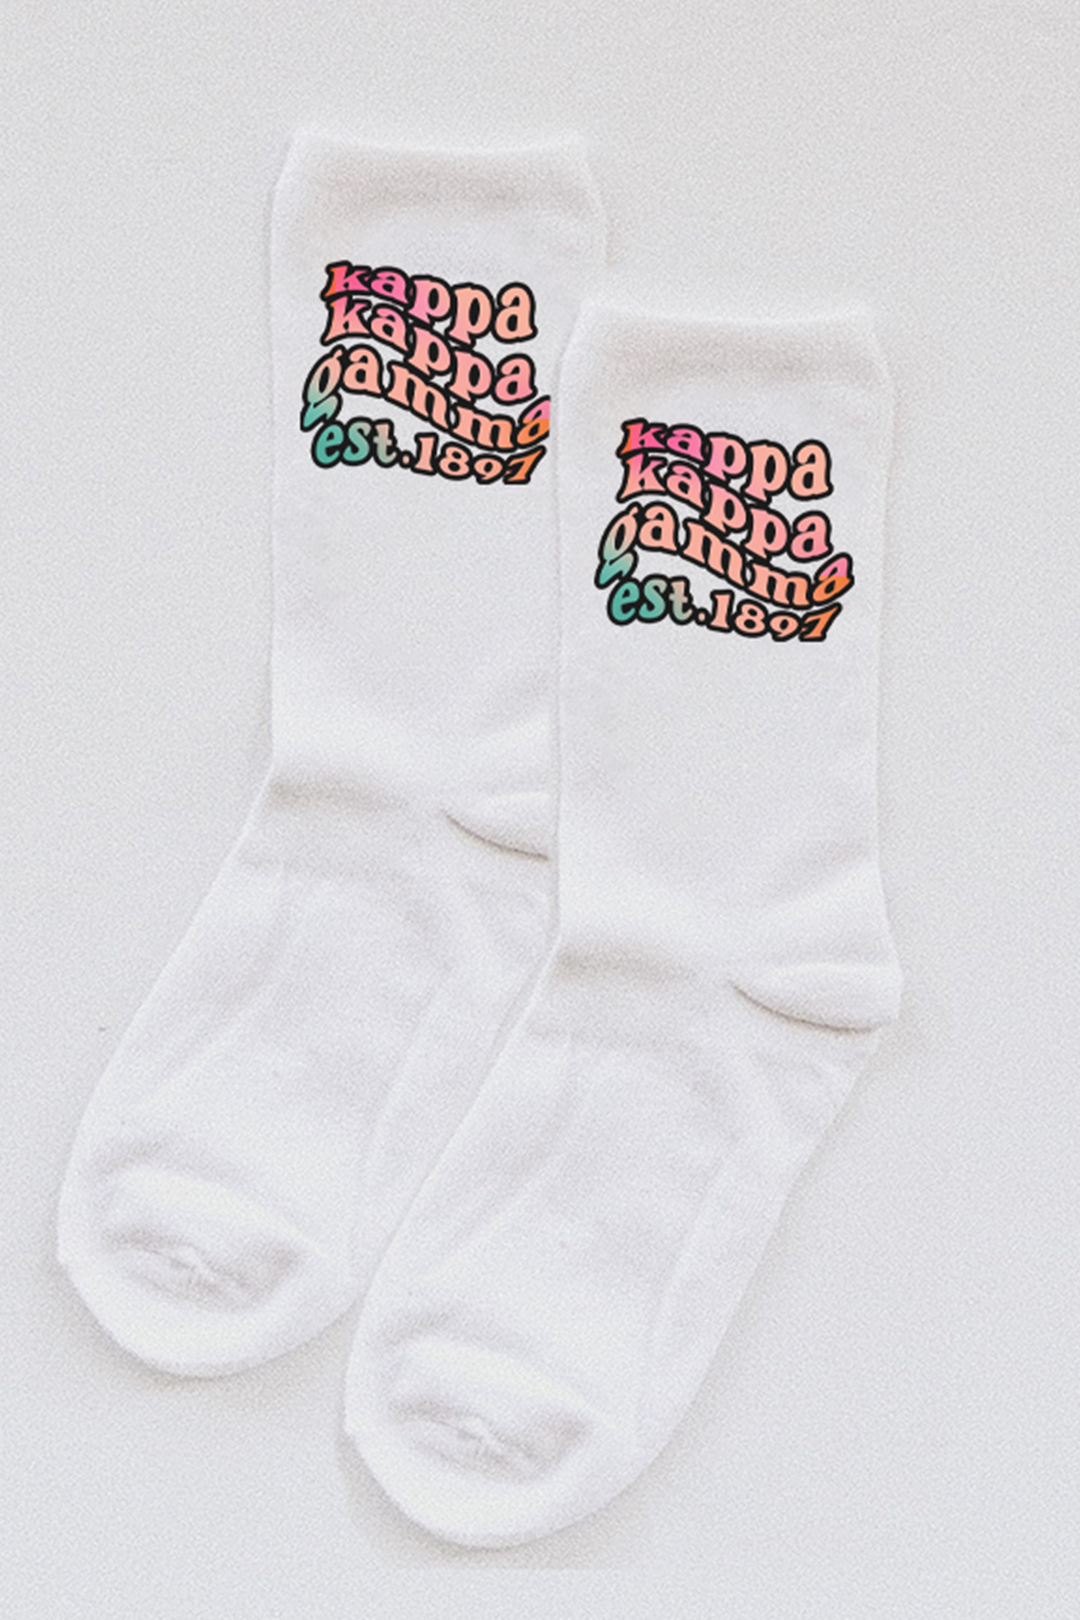 Gradient socks - Kappa Kappa Gamma